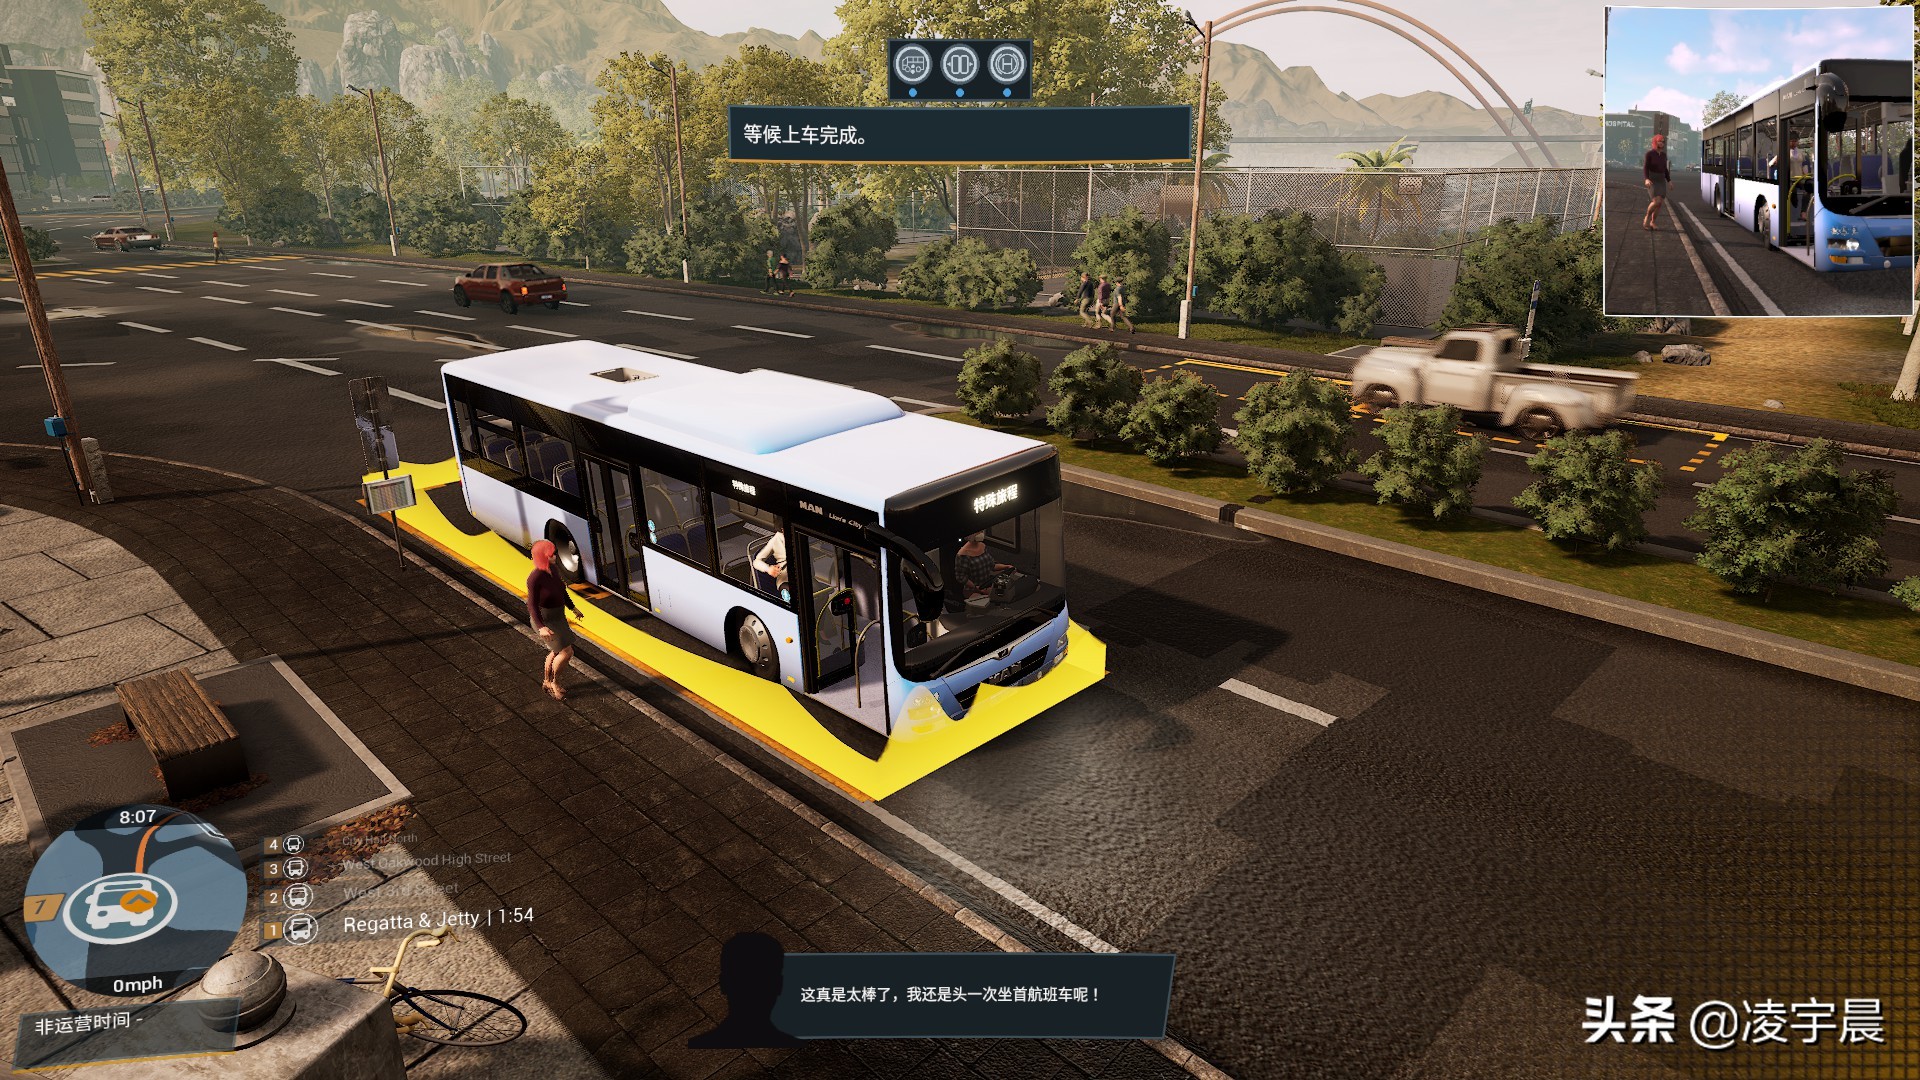 「游戏推荐」《巴士模拟21》：中规中矩的巴士模拟游戏